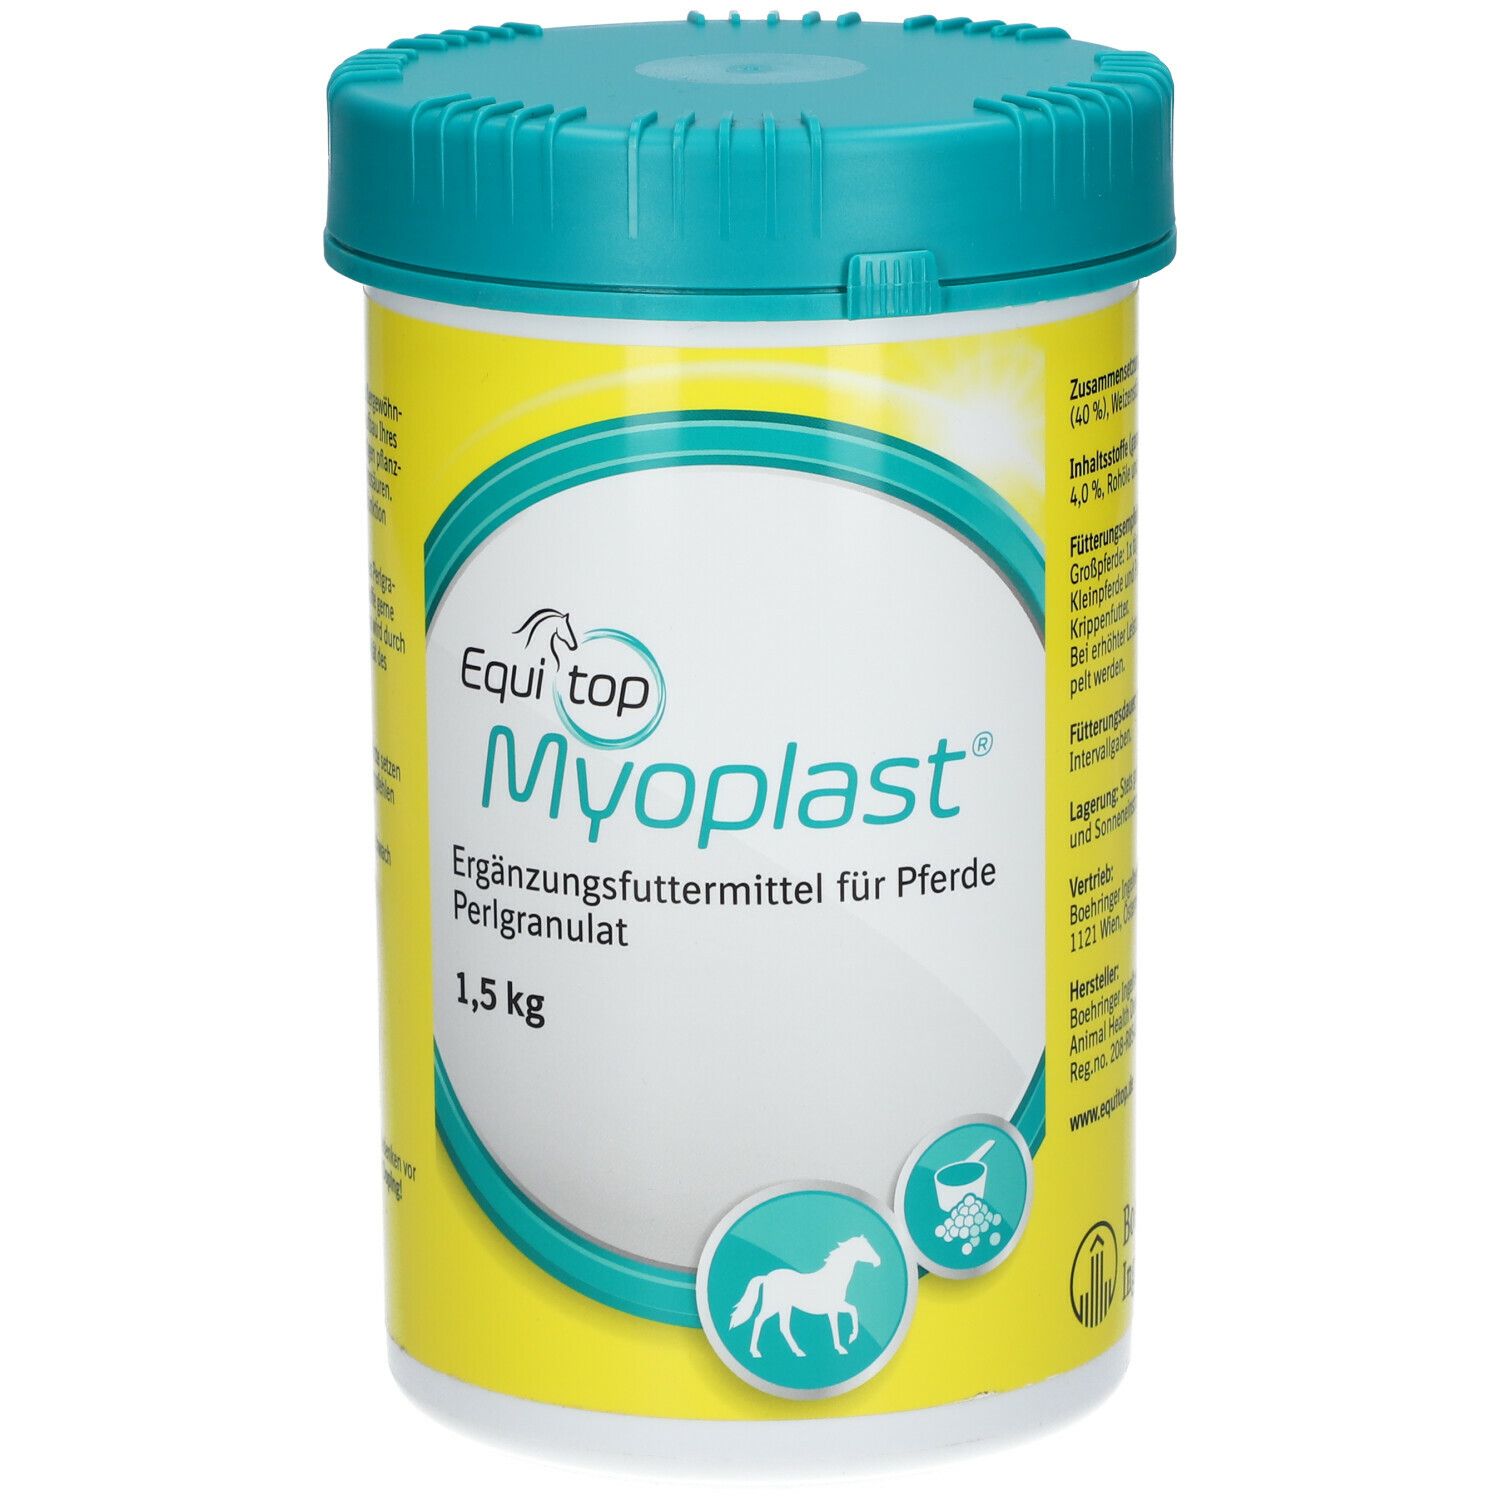 Equitop Myoplast®